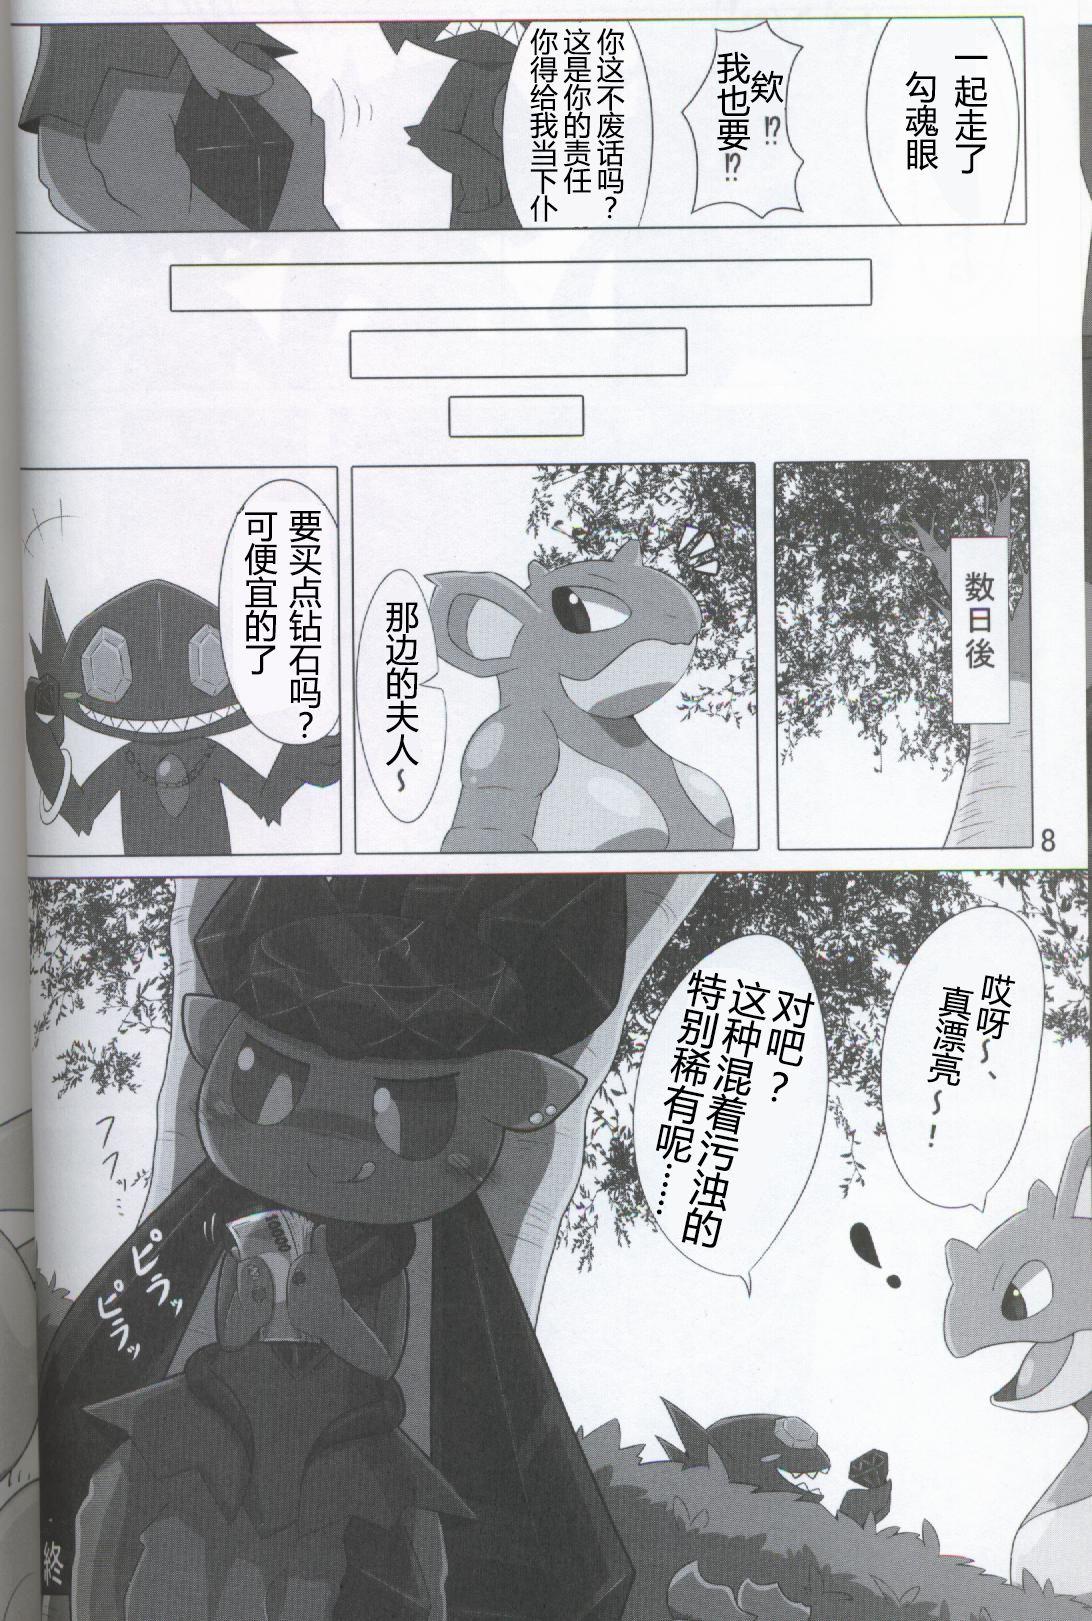 Fuck Pokéda | 宝可堕 - Pokemon Monstercock - Page 9